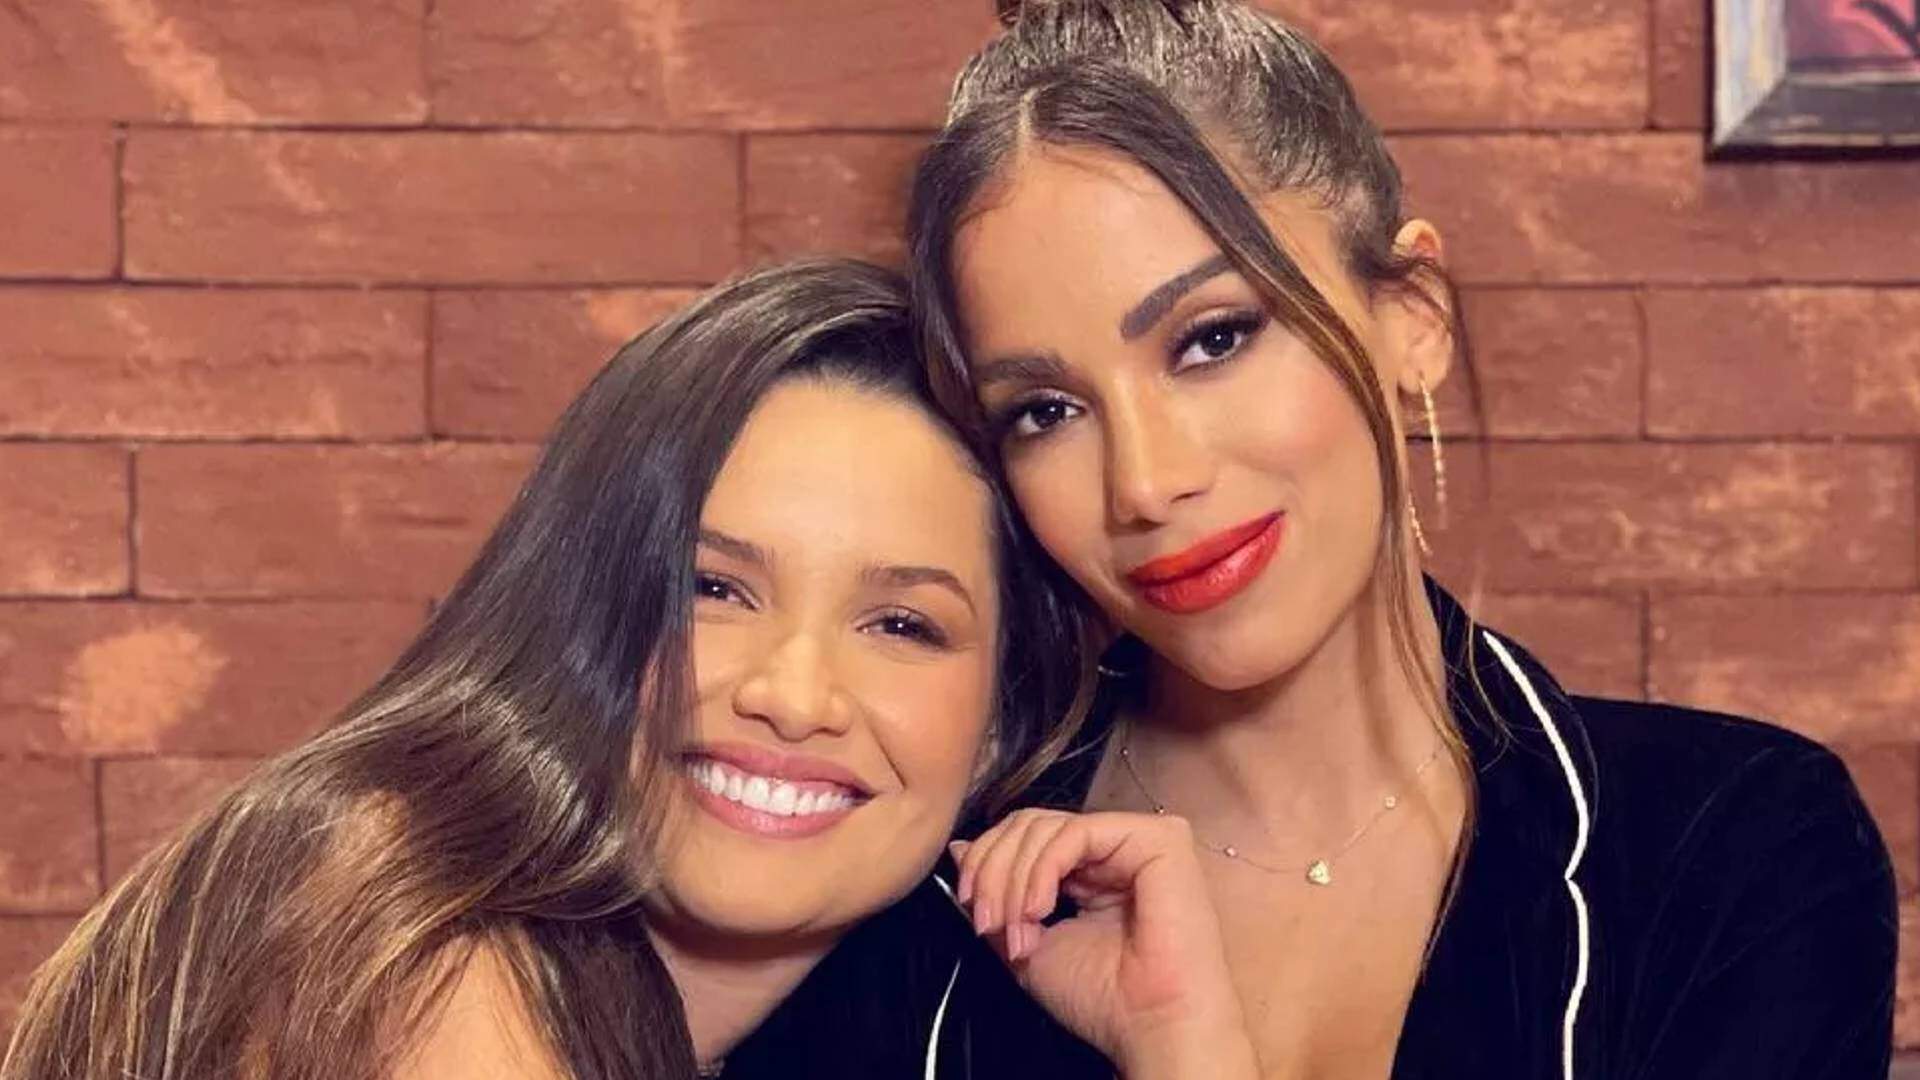 Anitta e Juliette postam cliques com cantora internacional e fãs comemoram encontro: “Divas” - Metropolitana FM